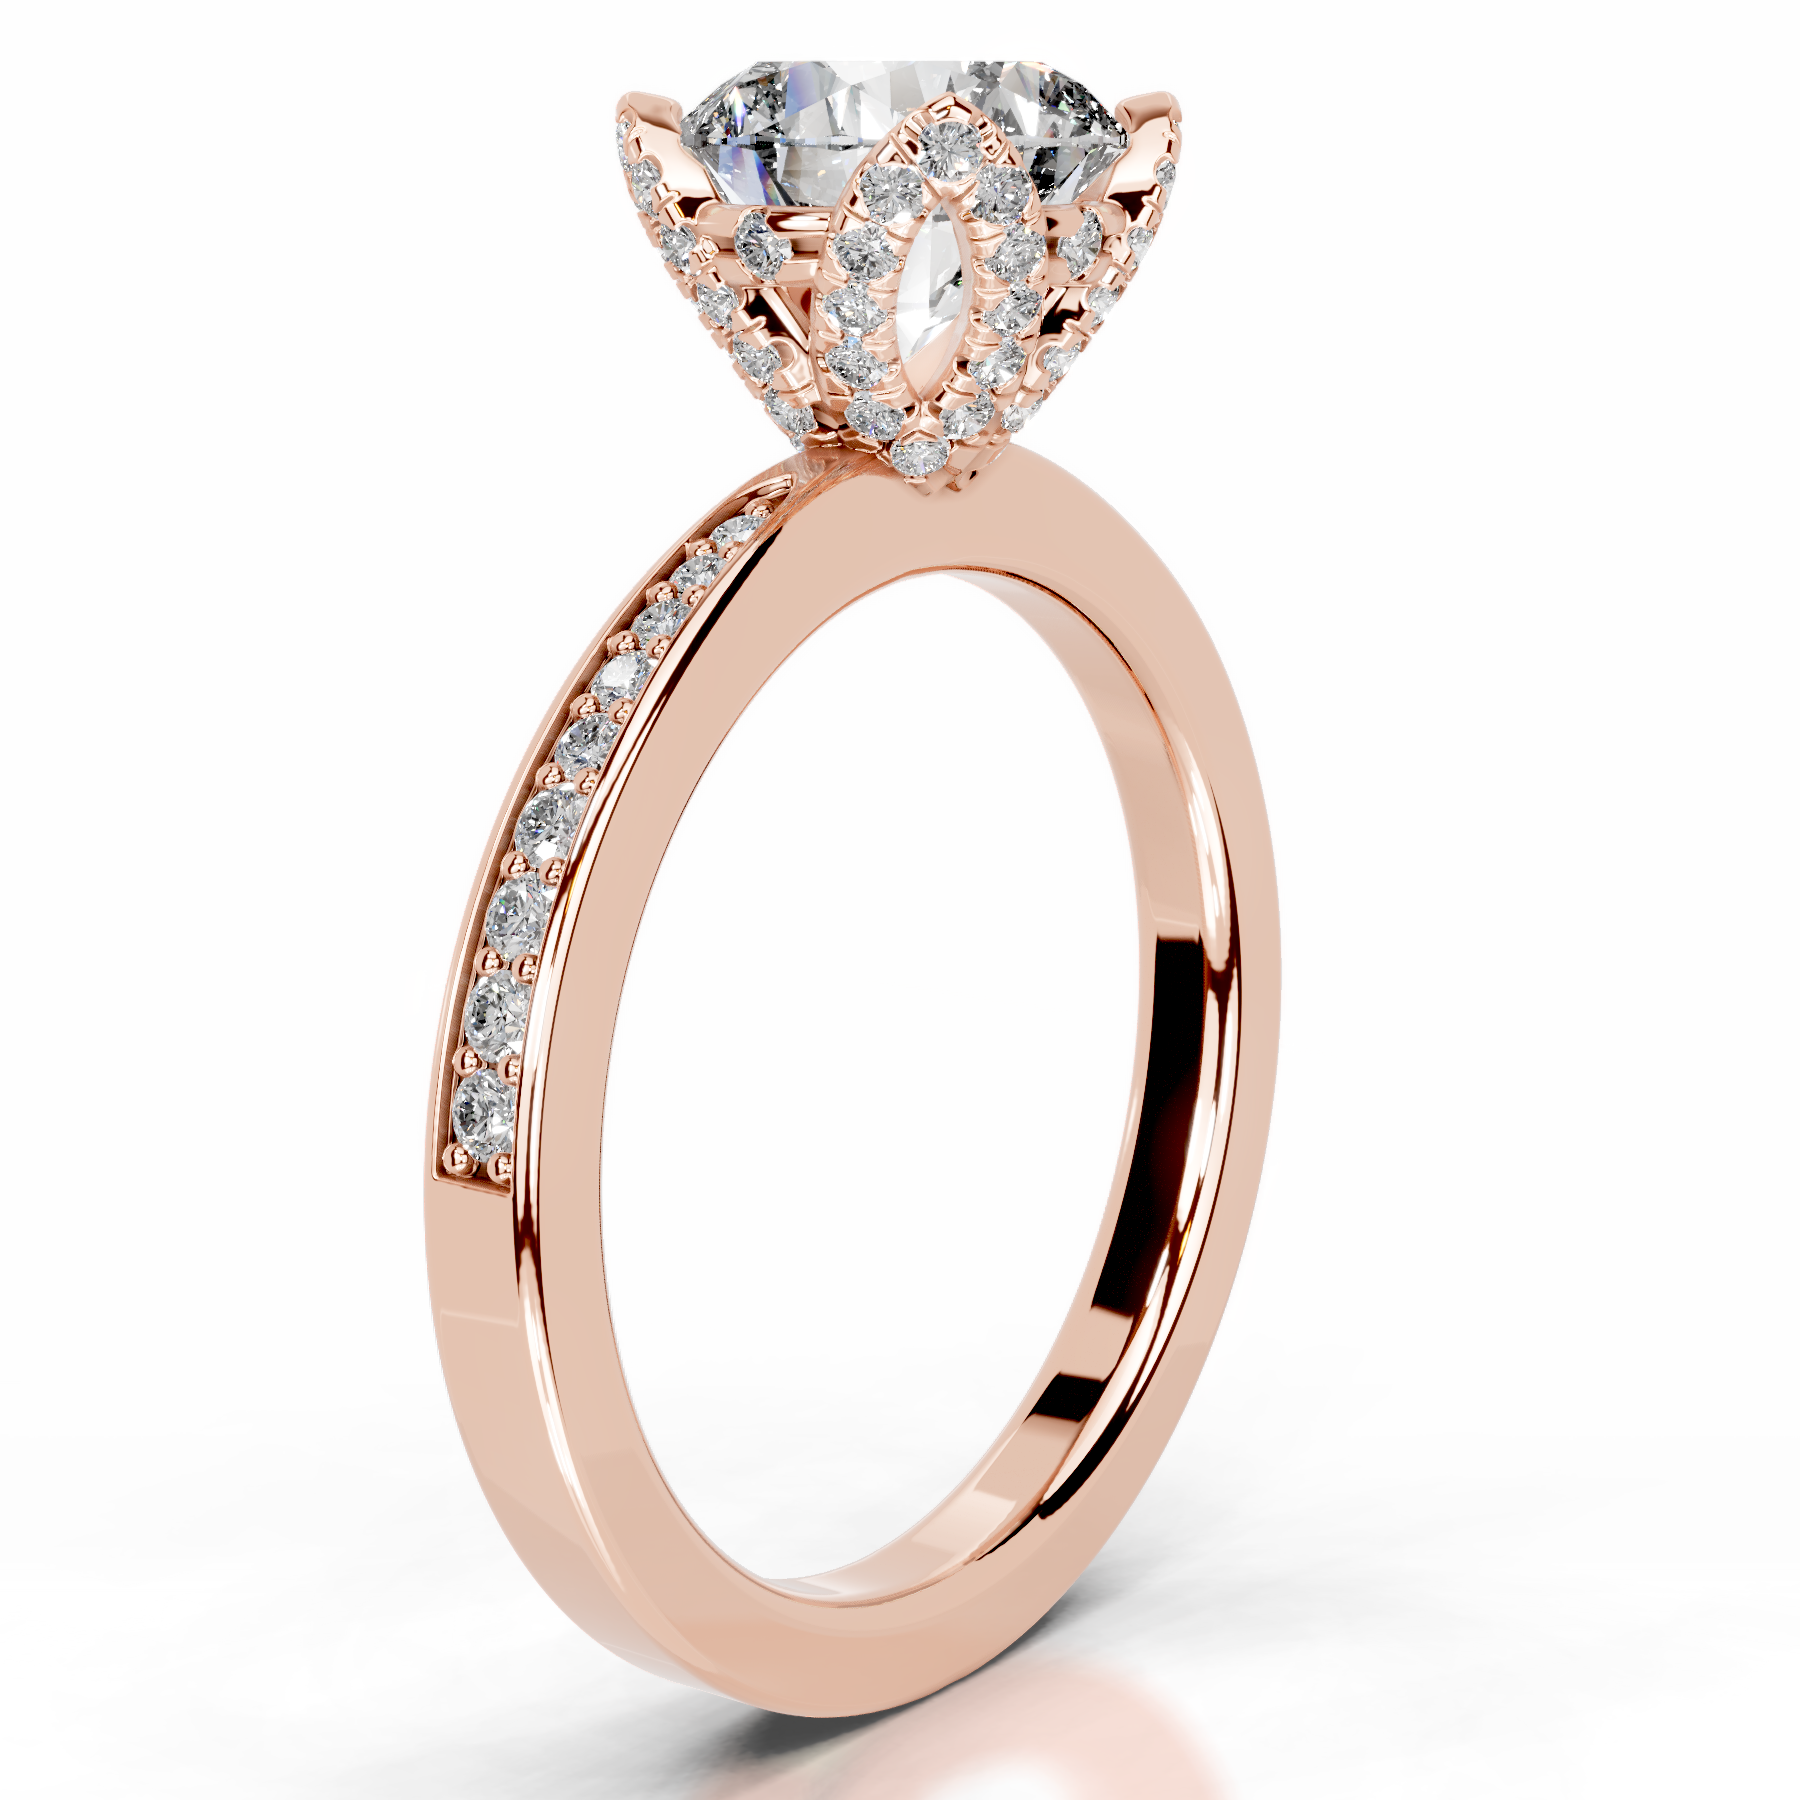 Daria Diamond Engagement Ring   (1.85 Carat) -14K Rose Gold